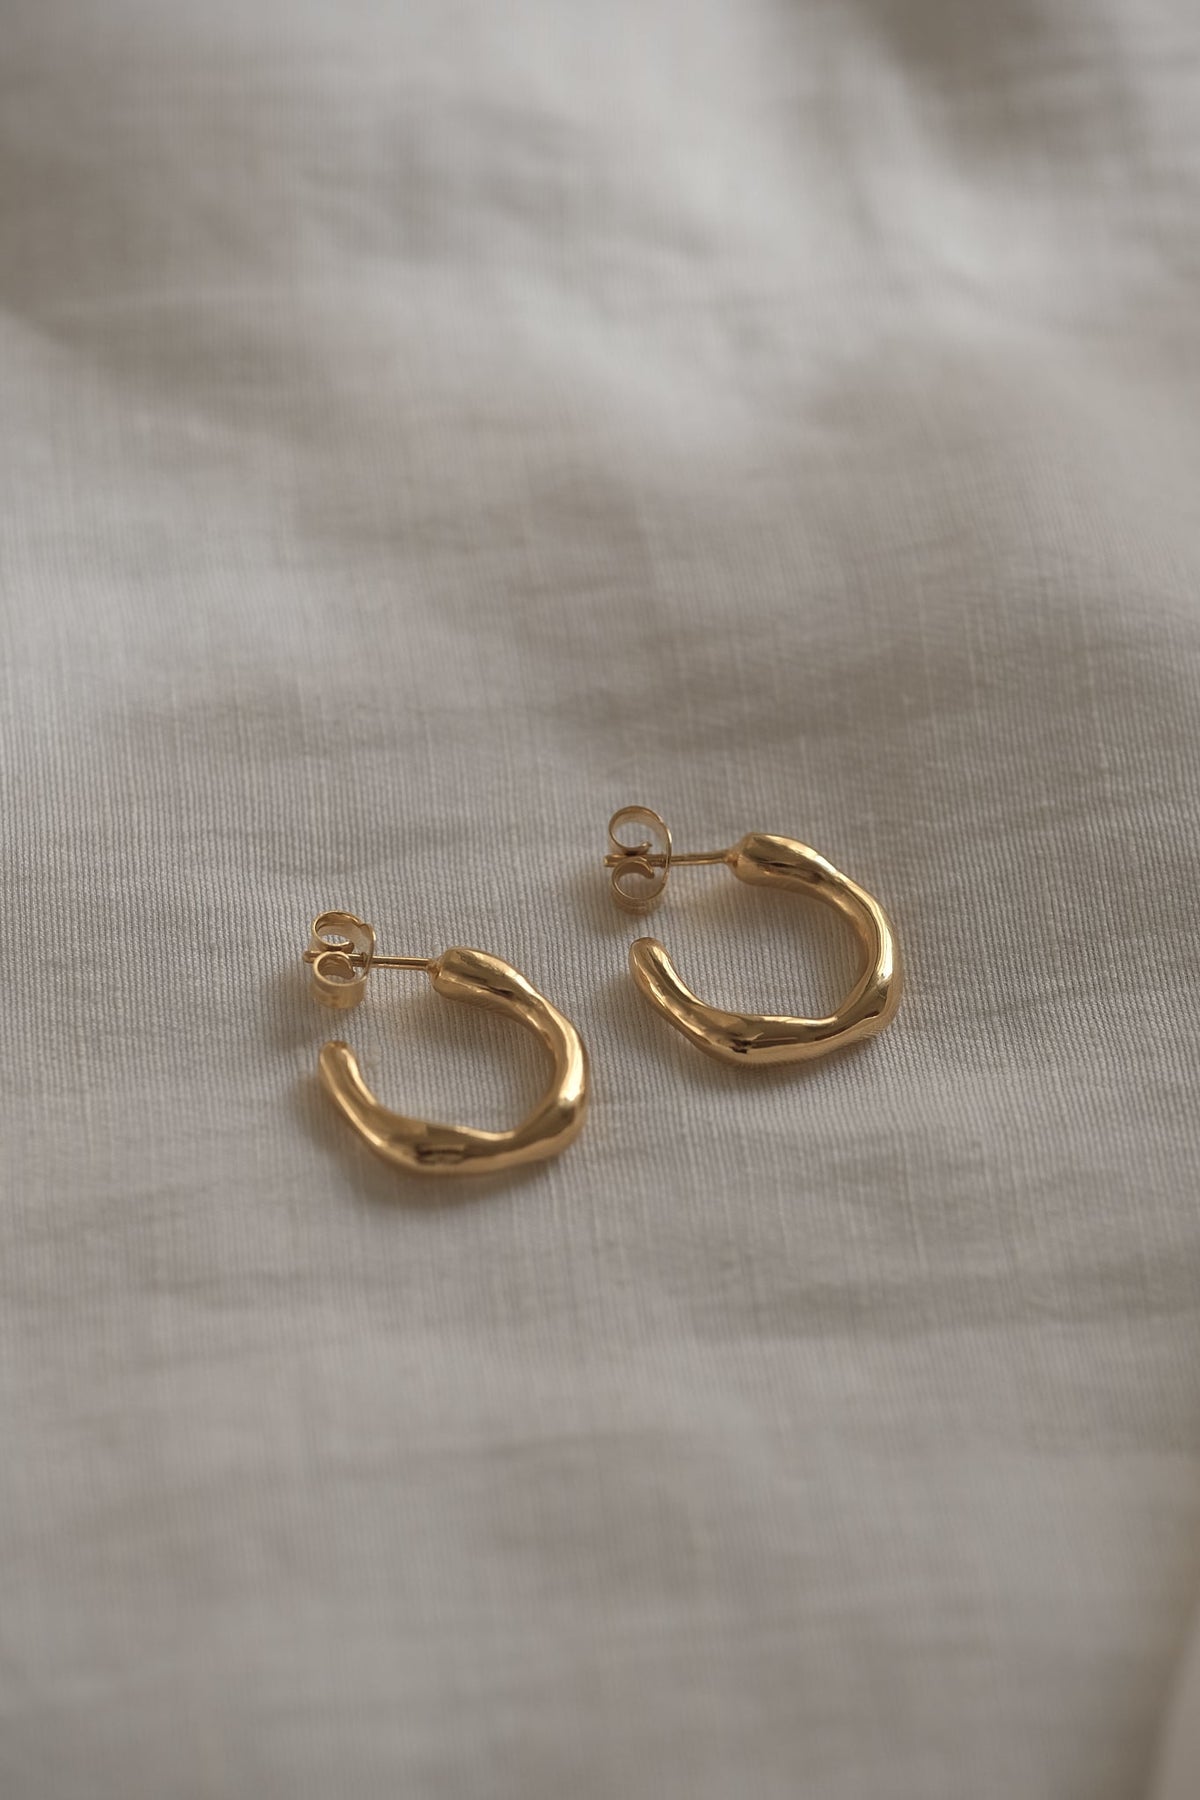 LUMI small earrings 18k gold